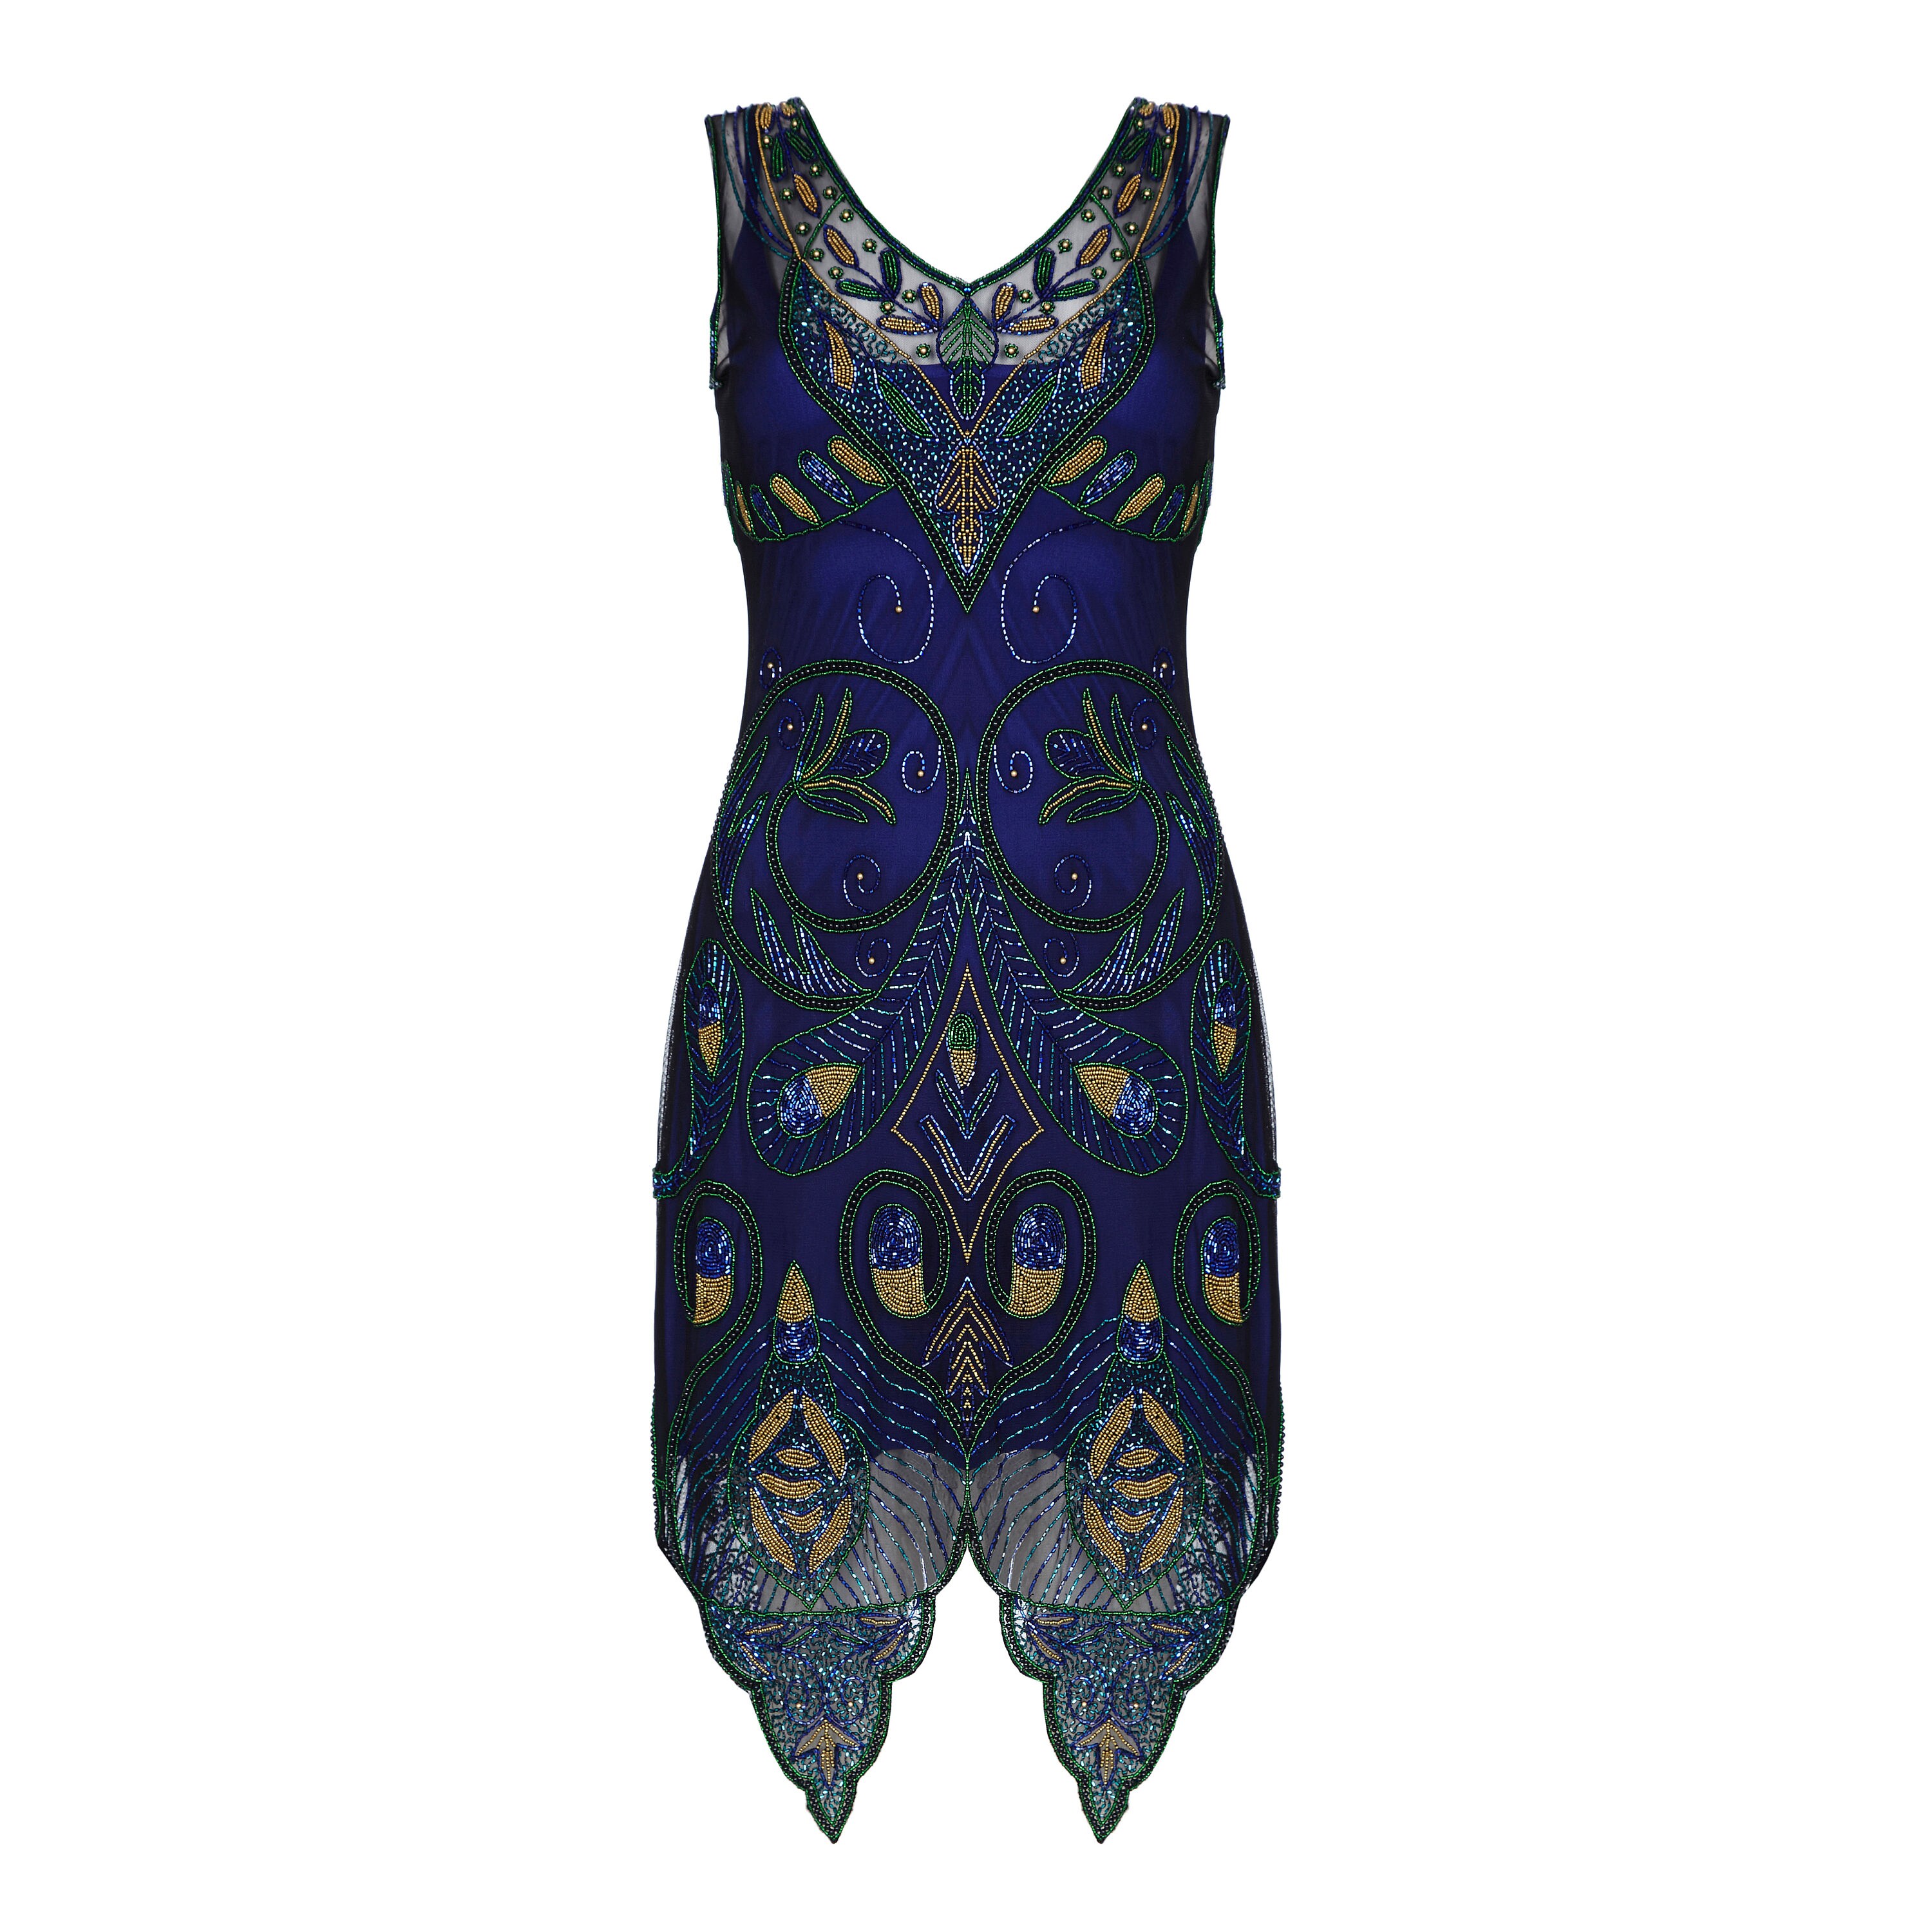 Emma Navy Blue Flapper Dress Slip Included 1920s inspired | Etsy